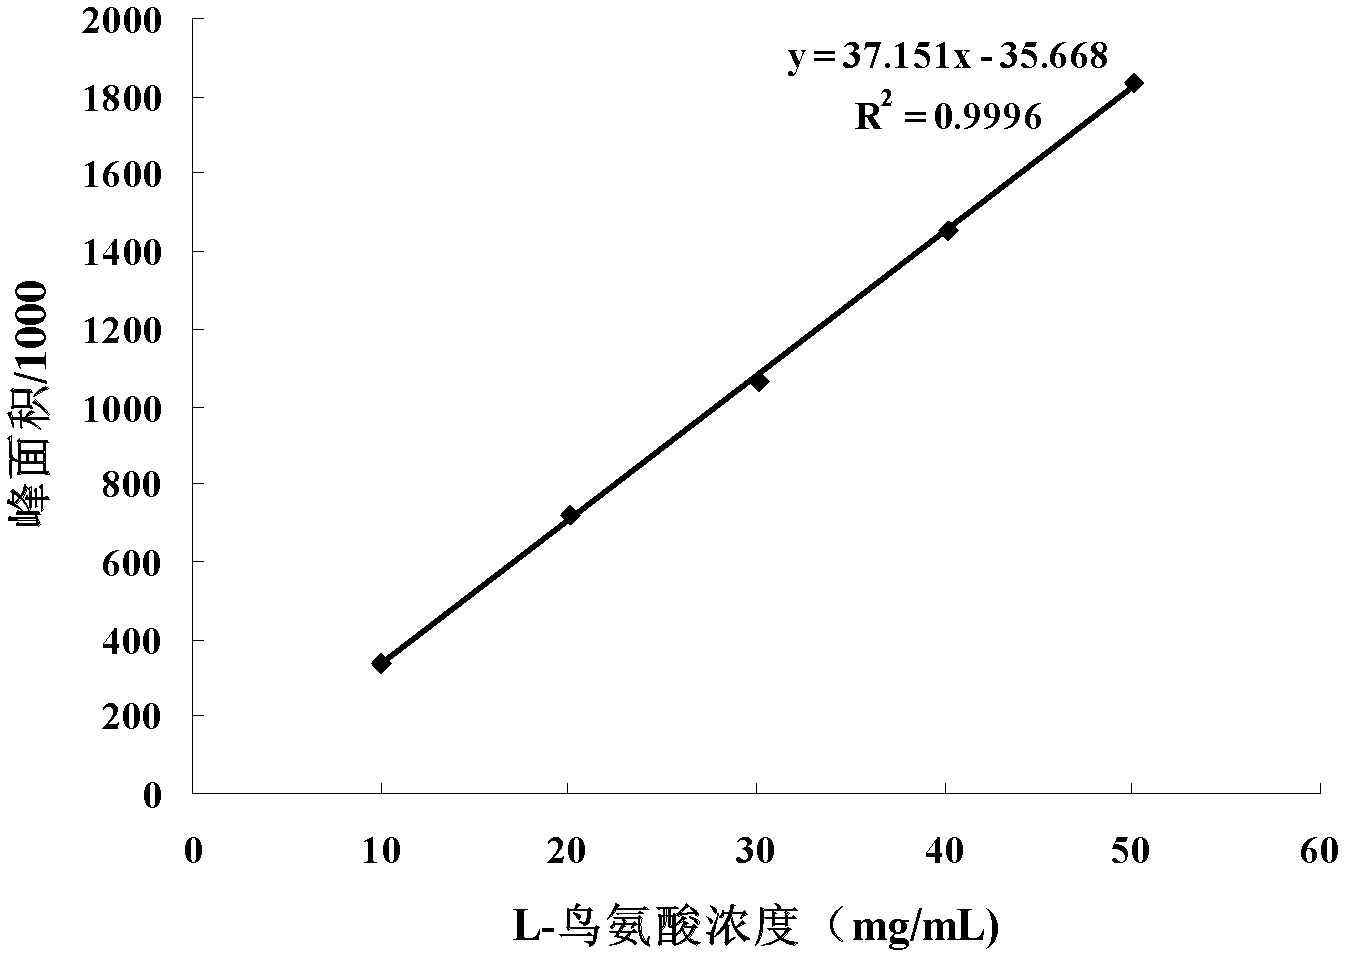 Method for preparing d-arginine hydrochloride and l-ornithine hydrochloride by splitting dl-arginine by microbial enzymatic method